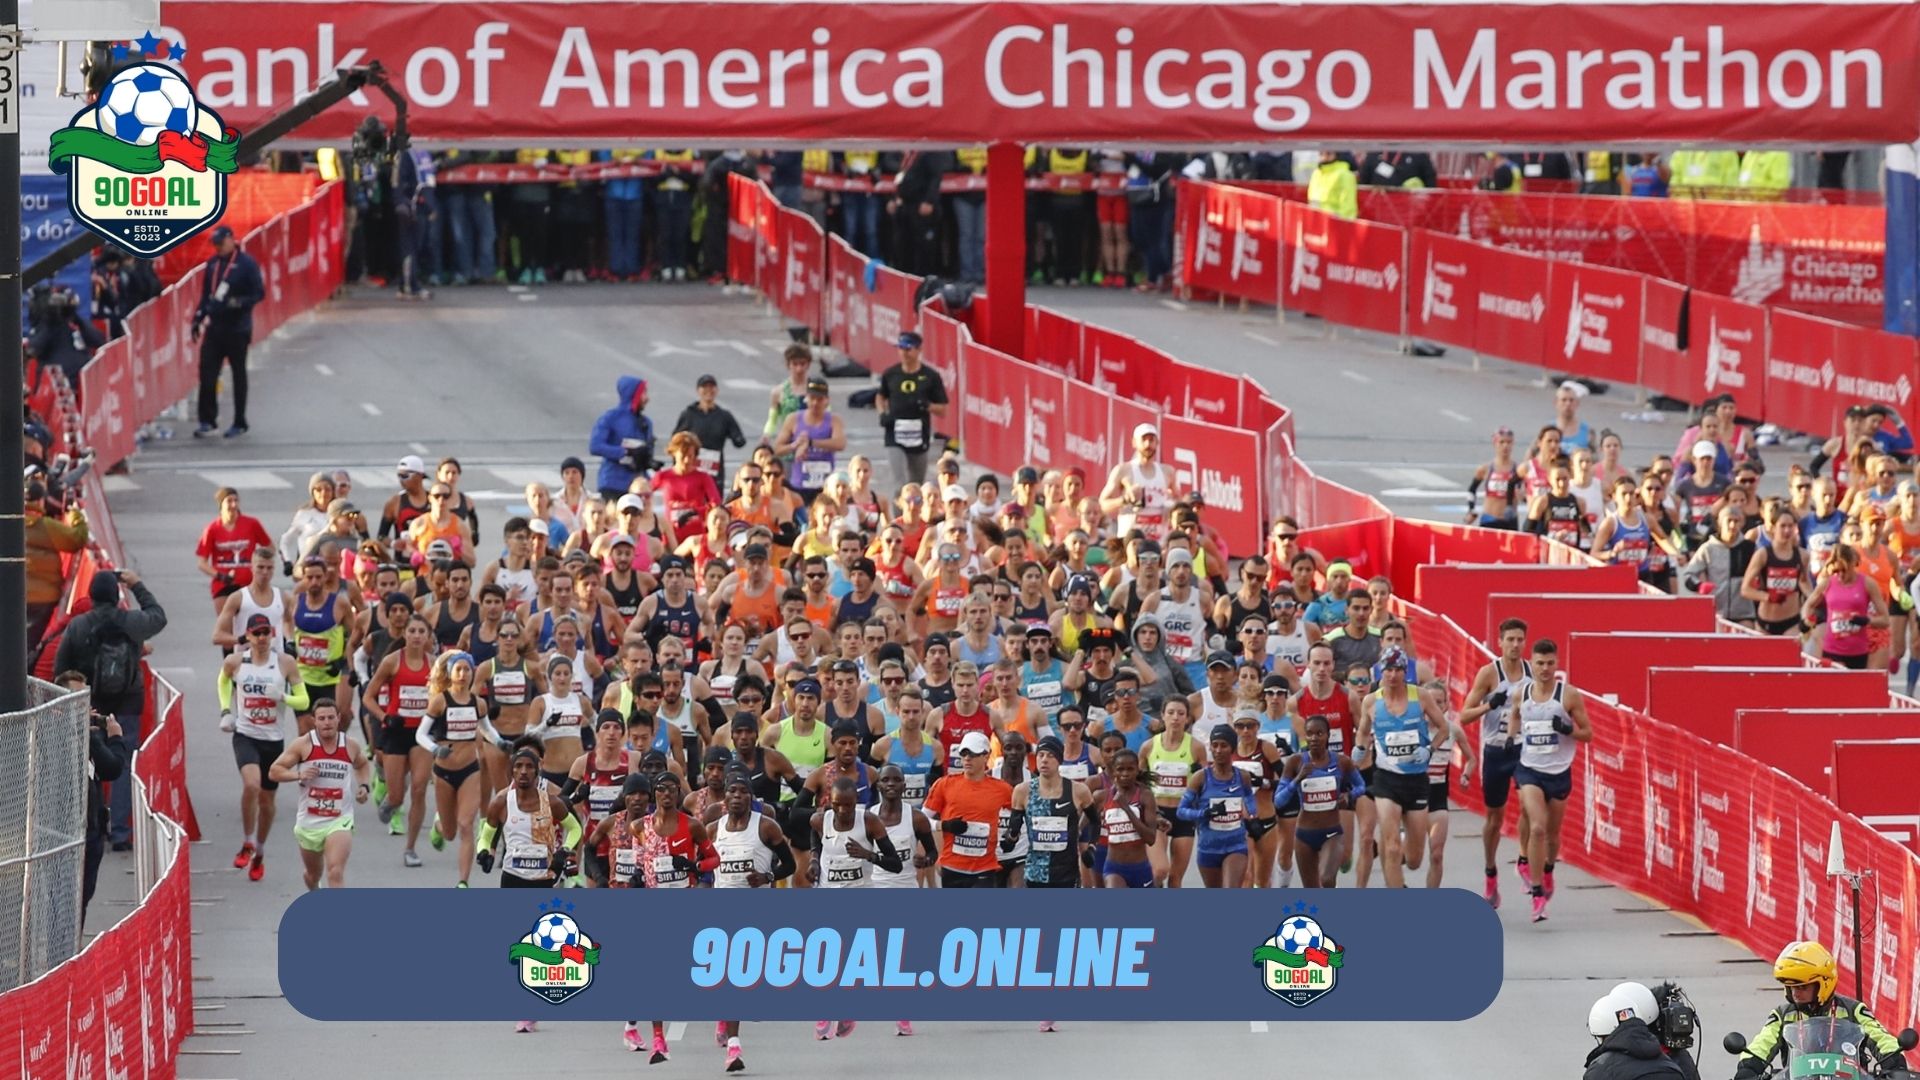 How to Watch the Chicago Marathon Live Stream Online